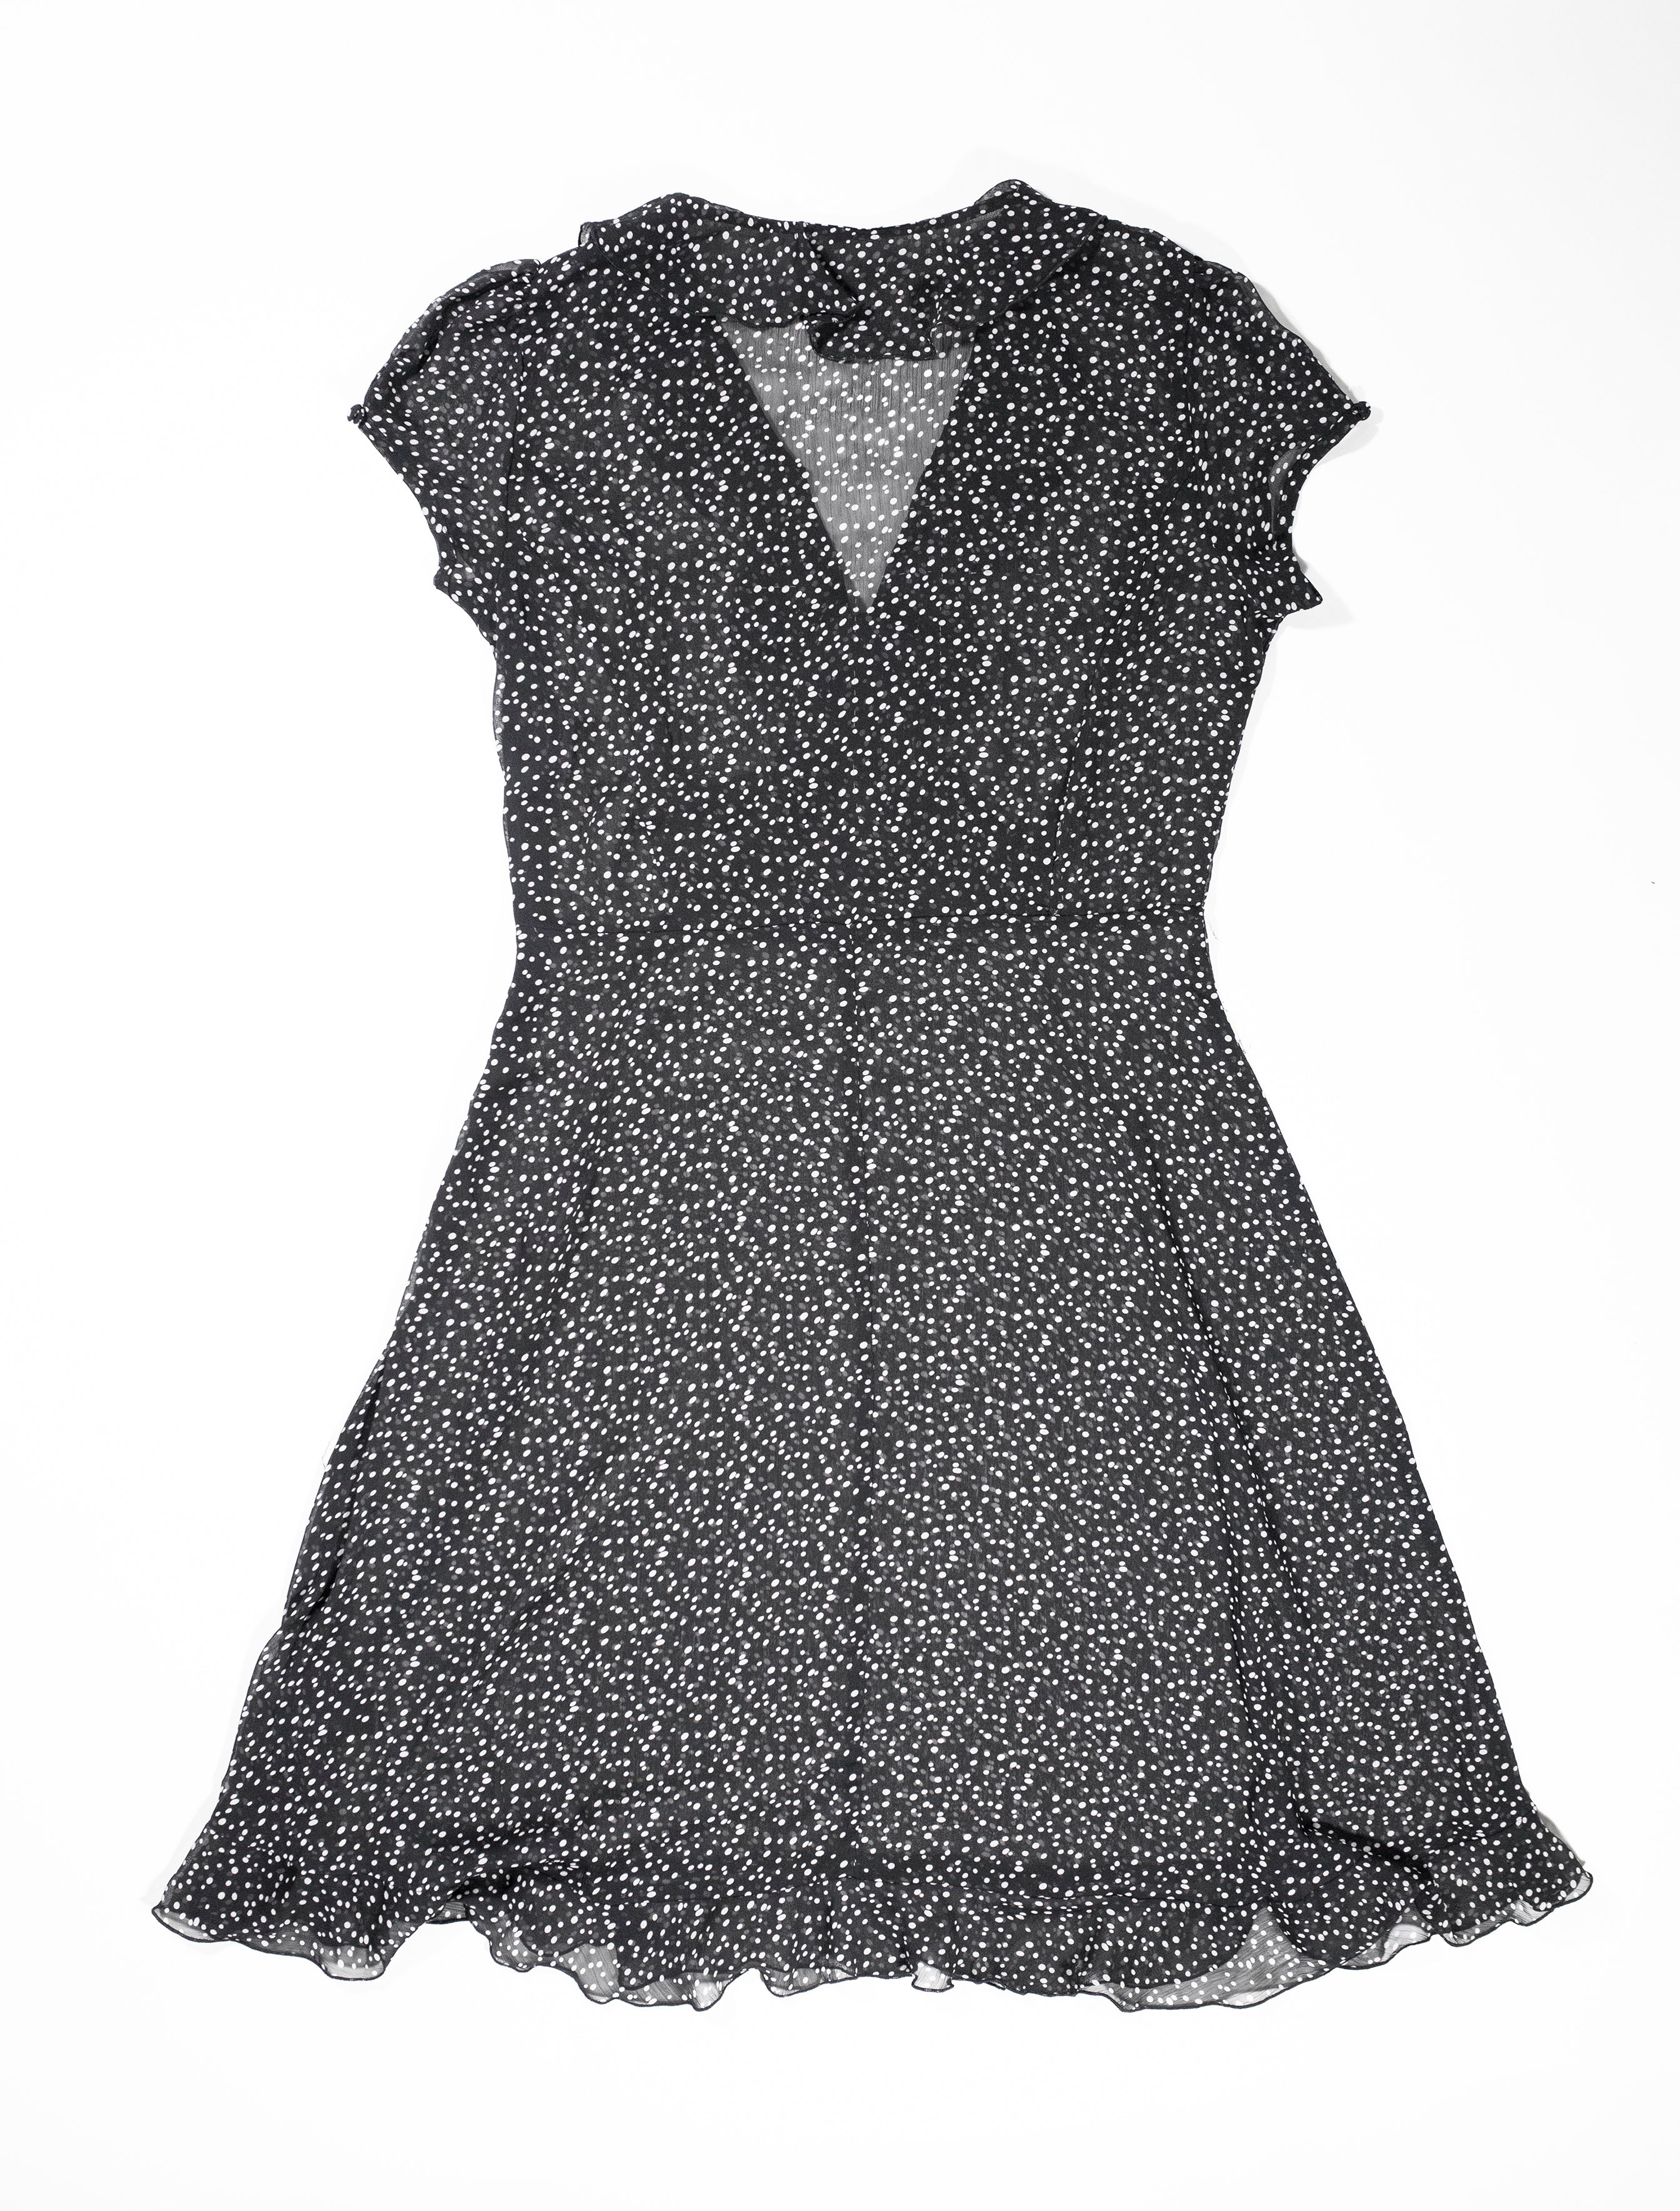 Vintage Black Polka Dot Sheer Dress